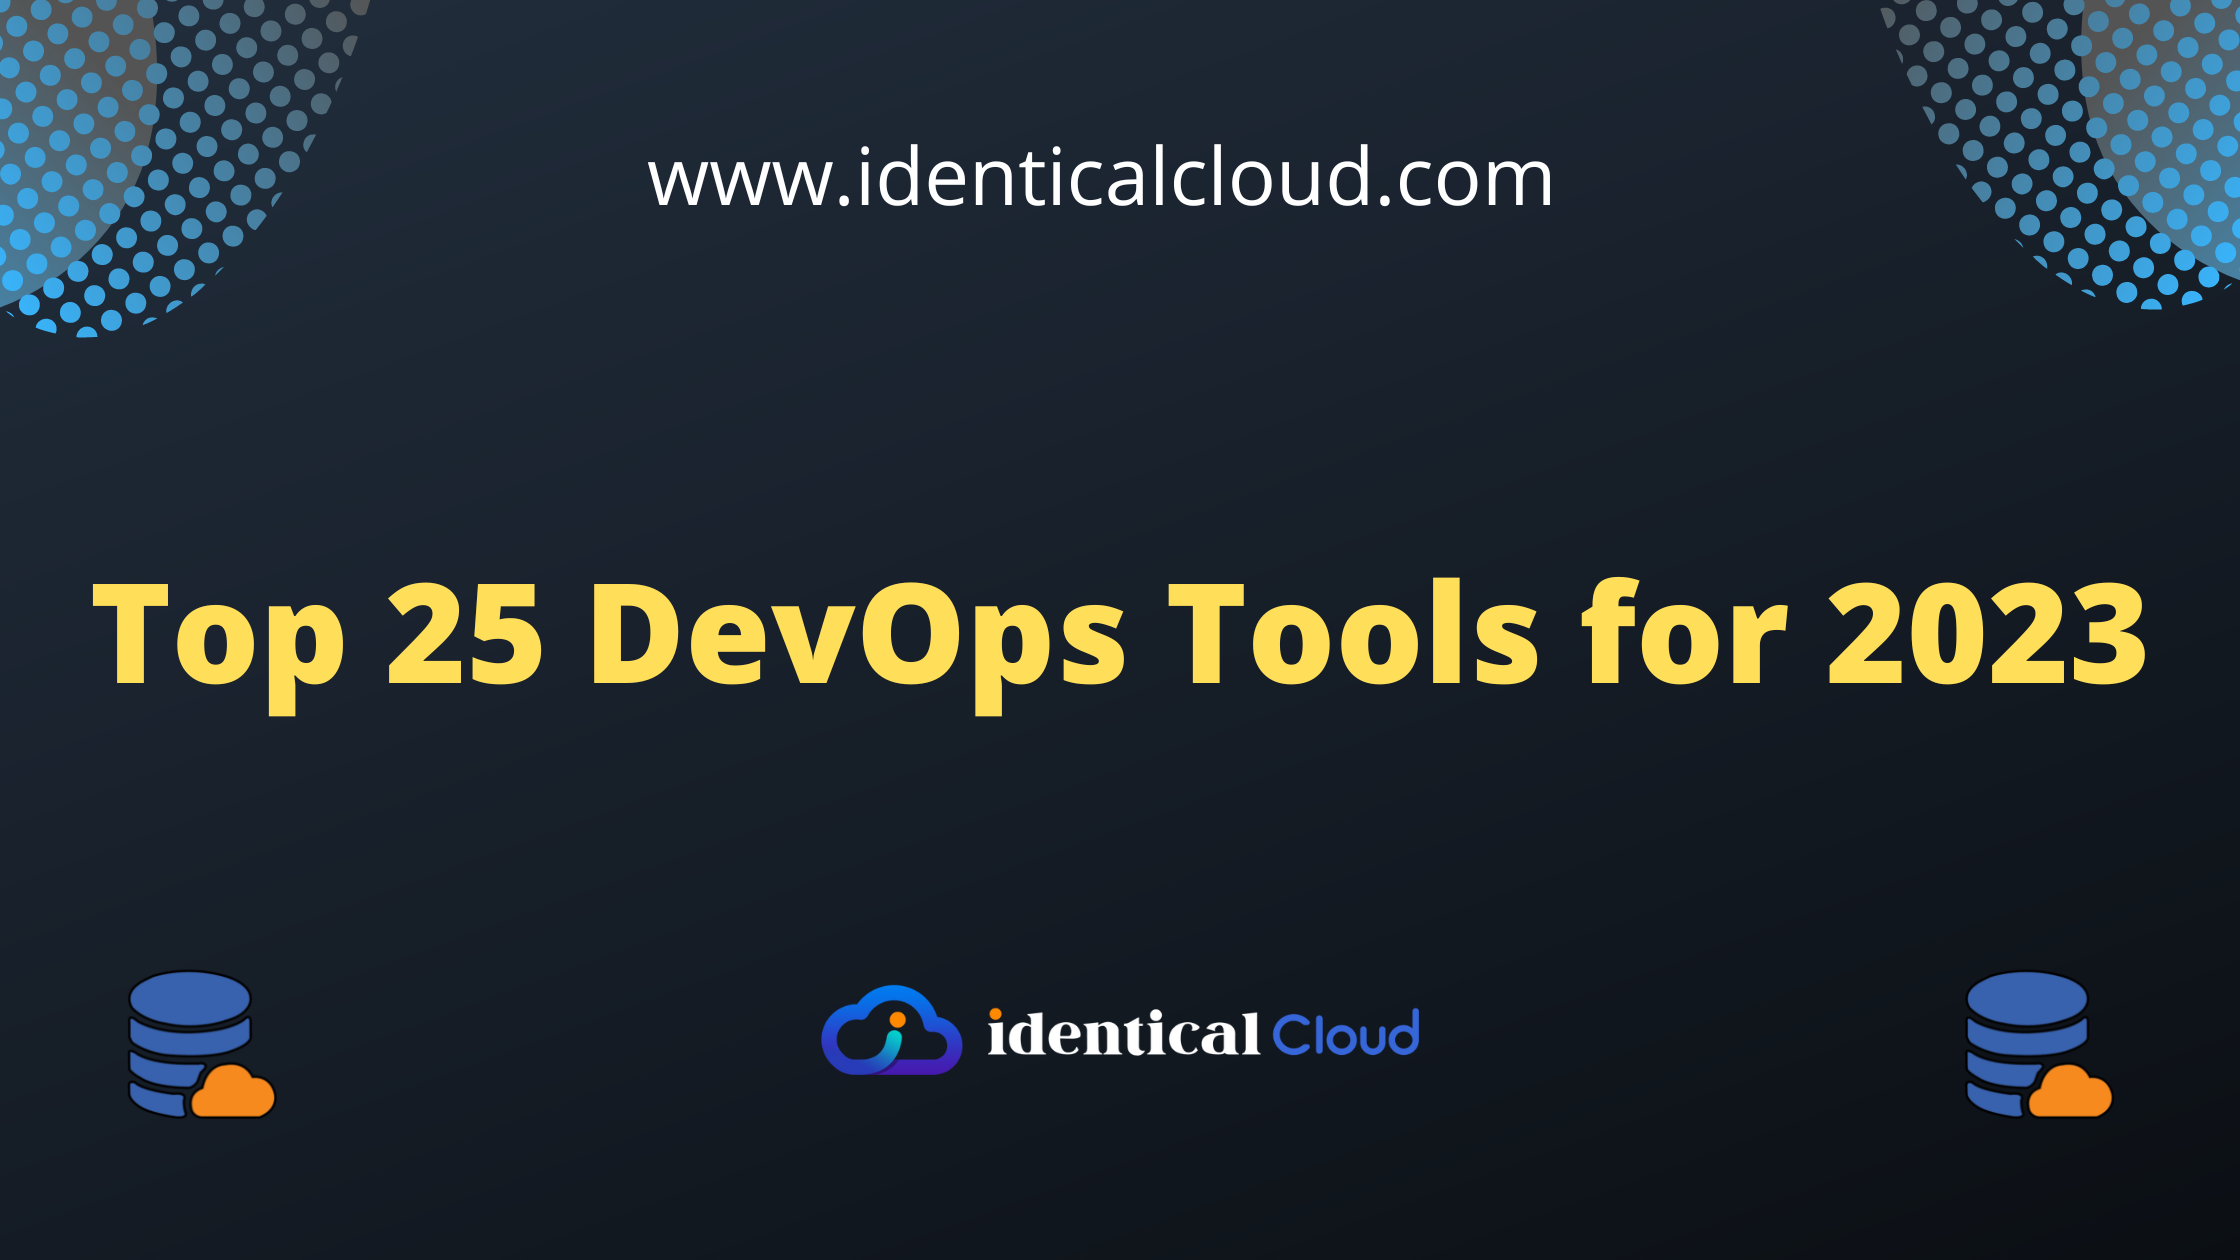 Top 25 DevOps Tools for 2023 - identicalcloud.com